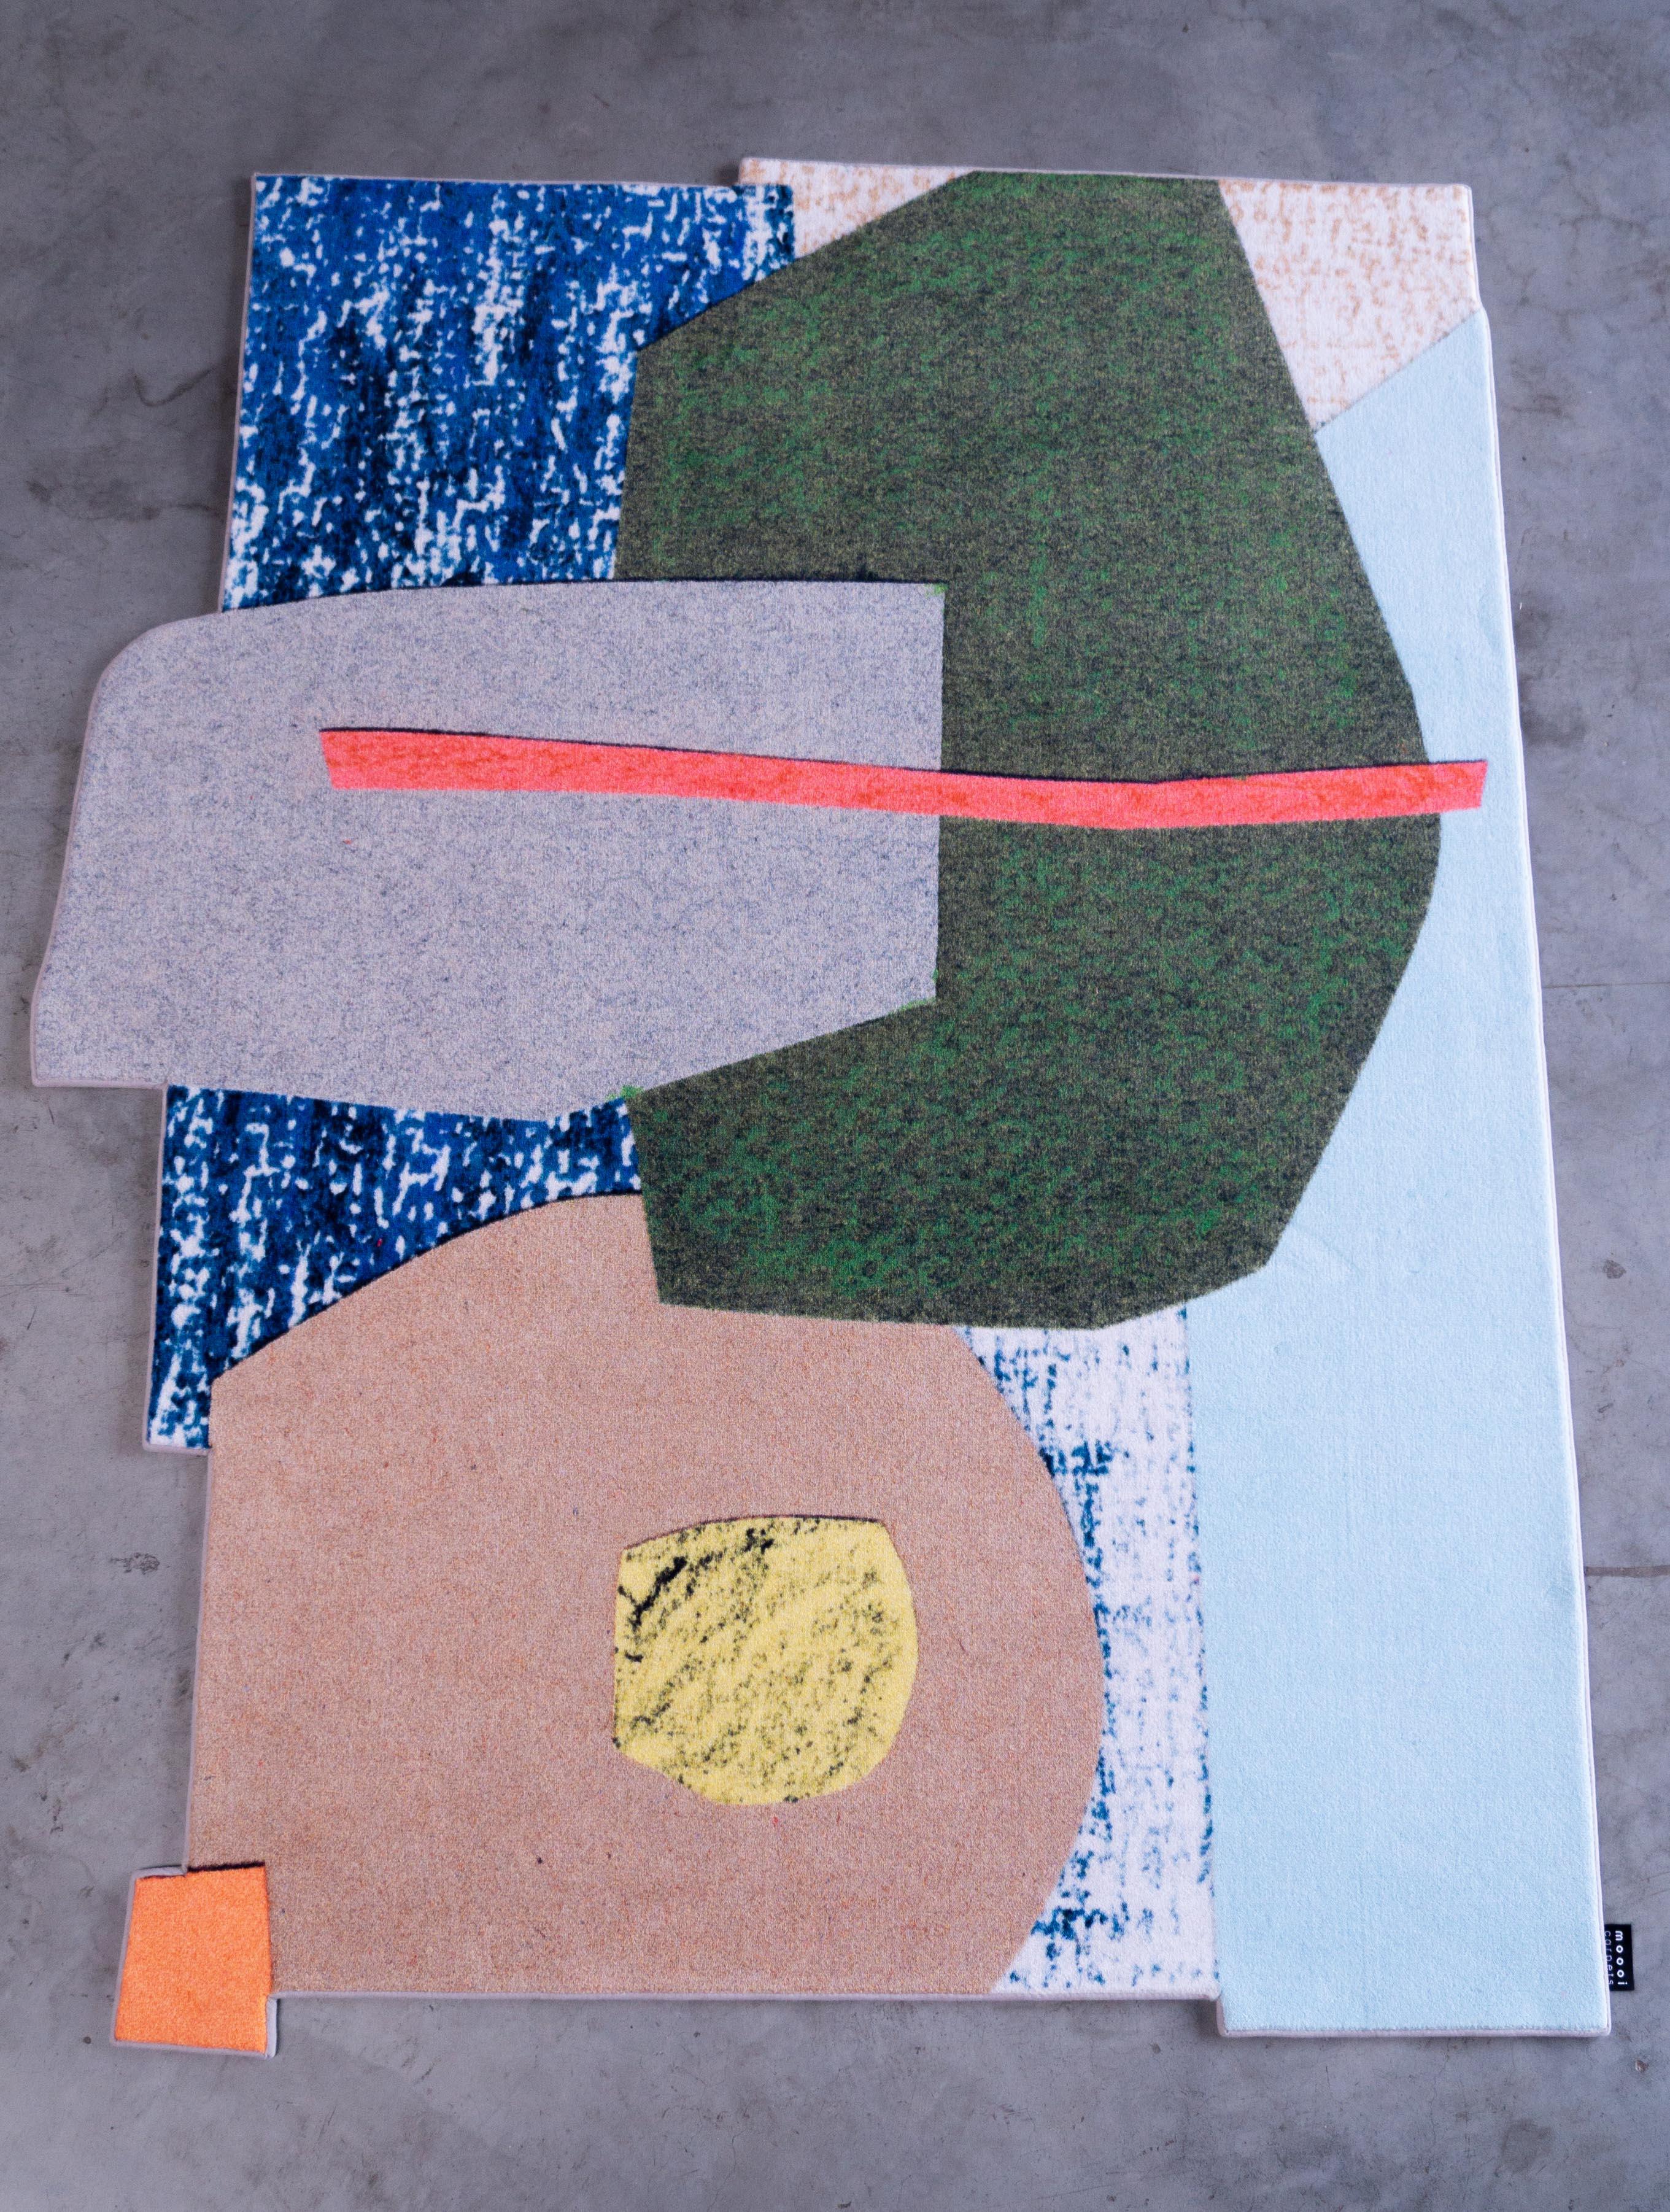 Moooi Großer Collage-Teppich aus Soft Yarn Polyamid von Kiki Van Eijk

Kiki wuchs in Tegelen auf, einer kleinen Stadt in den Niederlanden, wo sie ihre Jugend in der Natur verbrachte und tagträumte und zeichnete. Ihr Interesse an Produktdesign